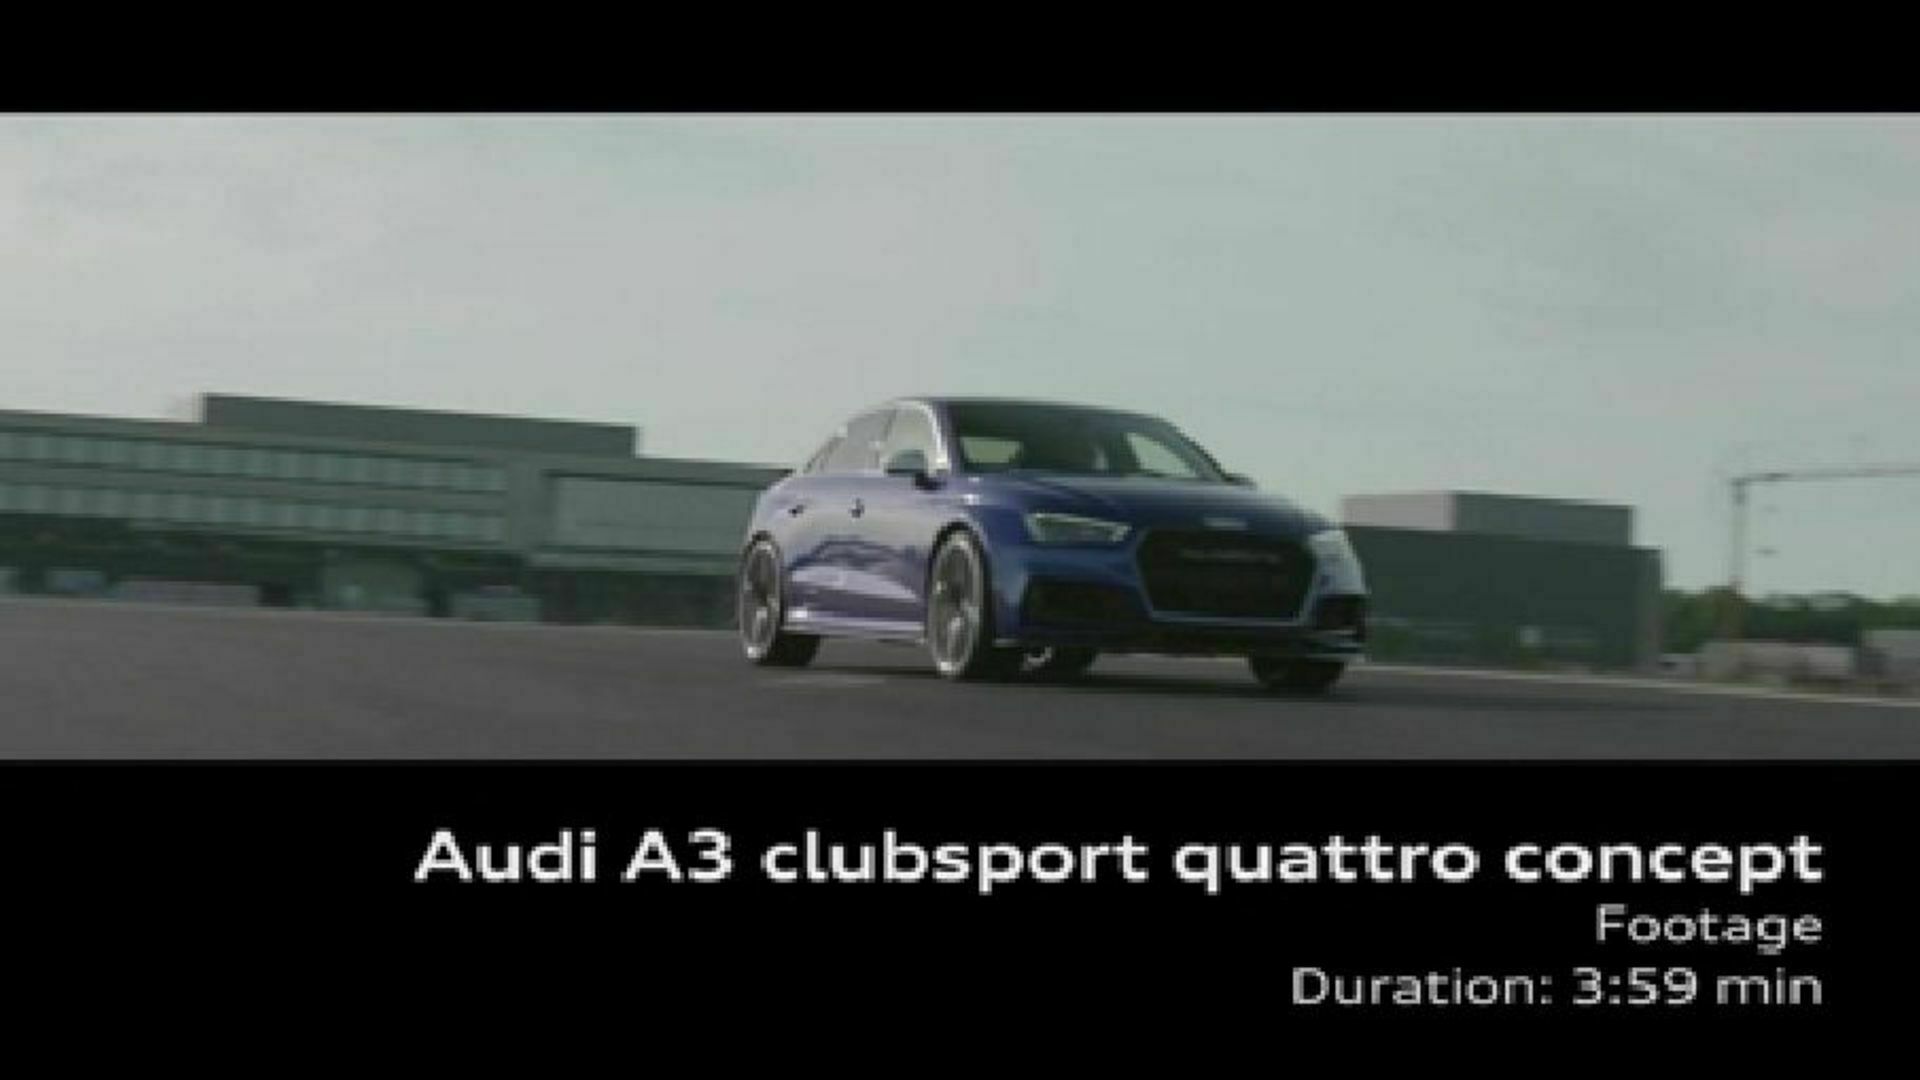 Der Audi A3 clubsport quattro concept - Footage